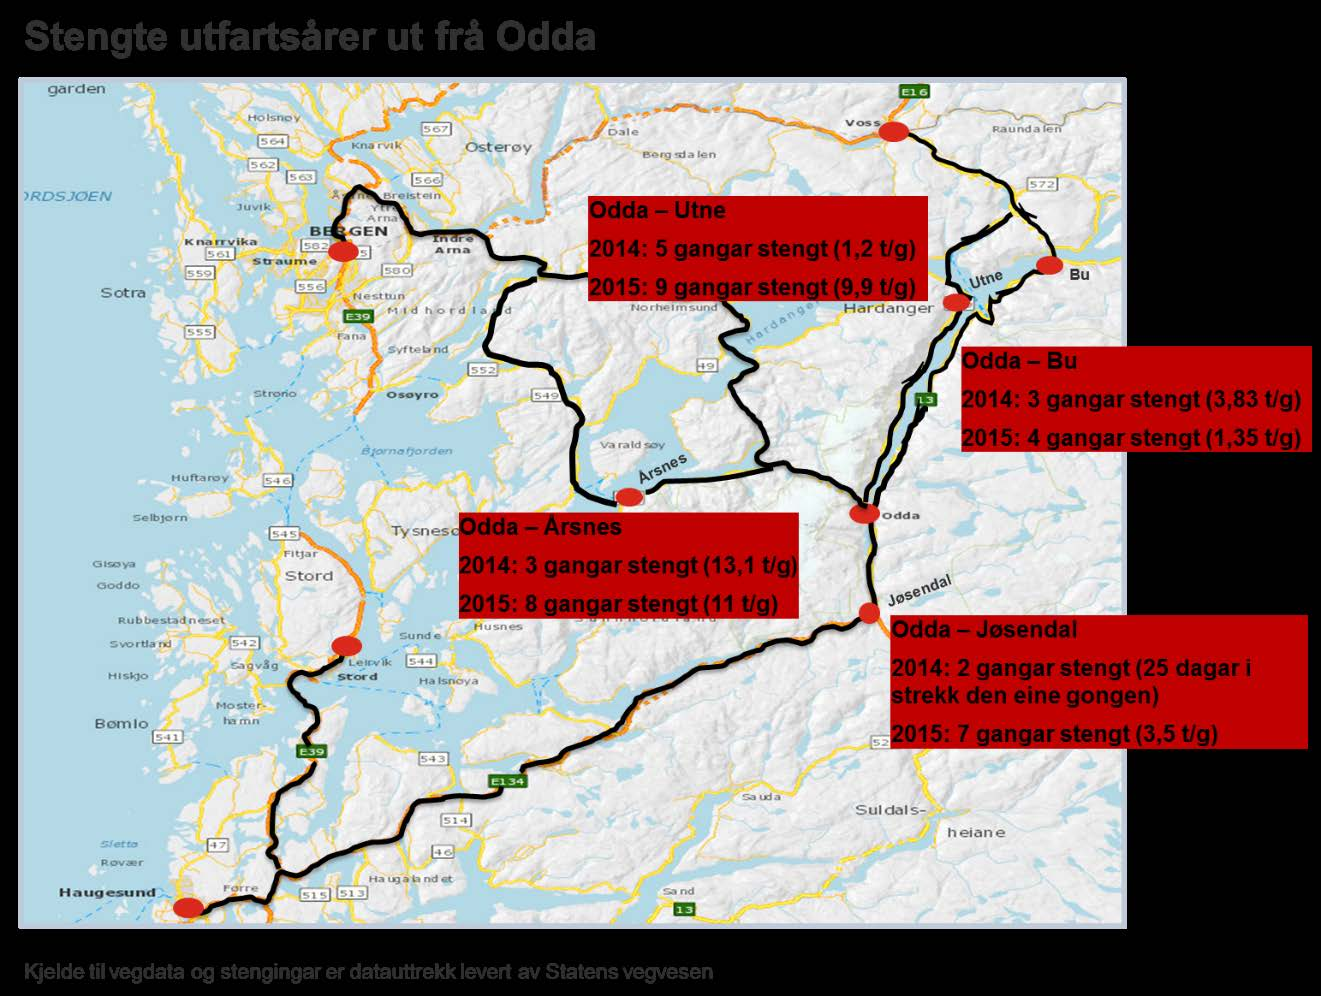 Odda - Haugesund, buss 2 timar 40 minuttar (ca. 4 gongar dagleg) Kinsarvik - Bergen, buss med meir om lag 3-4 timar (ca. 7 gongar dagleg) Kinsarvik - Odda, buss 55 minuttar (ca.